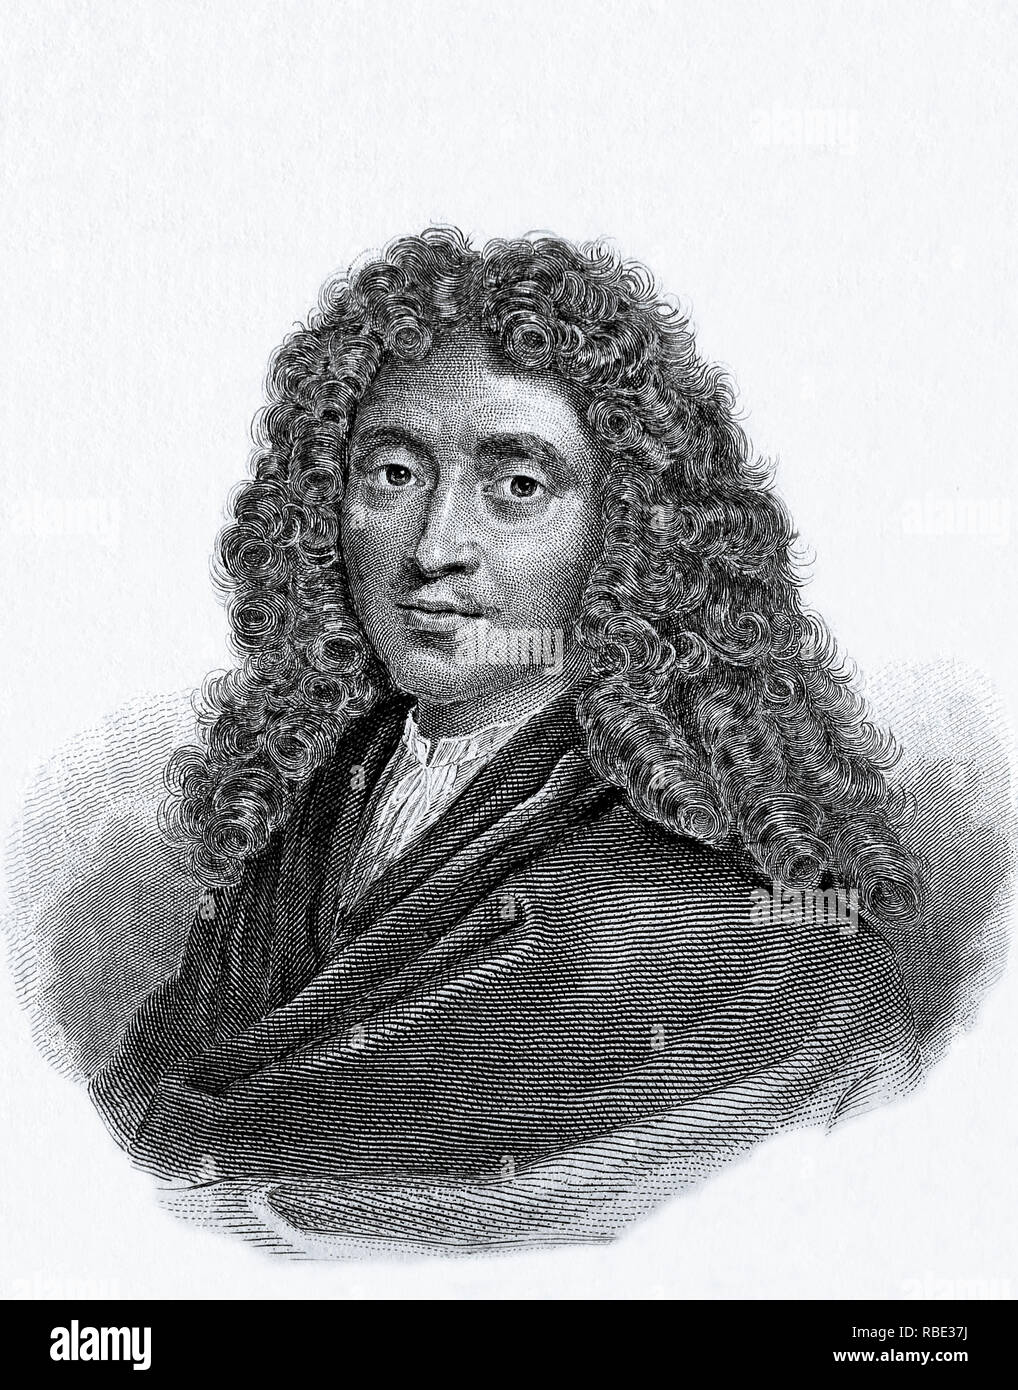 Molière, Jean-Baptiste Poquelin (1622-1673) berühmte französische Dramatiker, Schauspieler und Dichter. Französische Kultur, Französische Literatur. Gravur Stockfoto